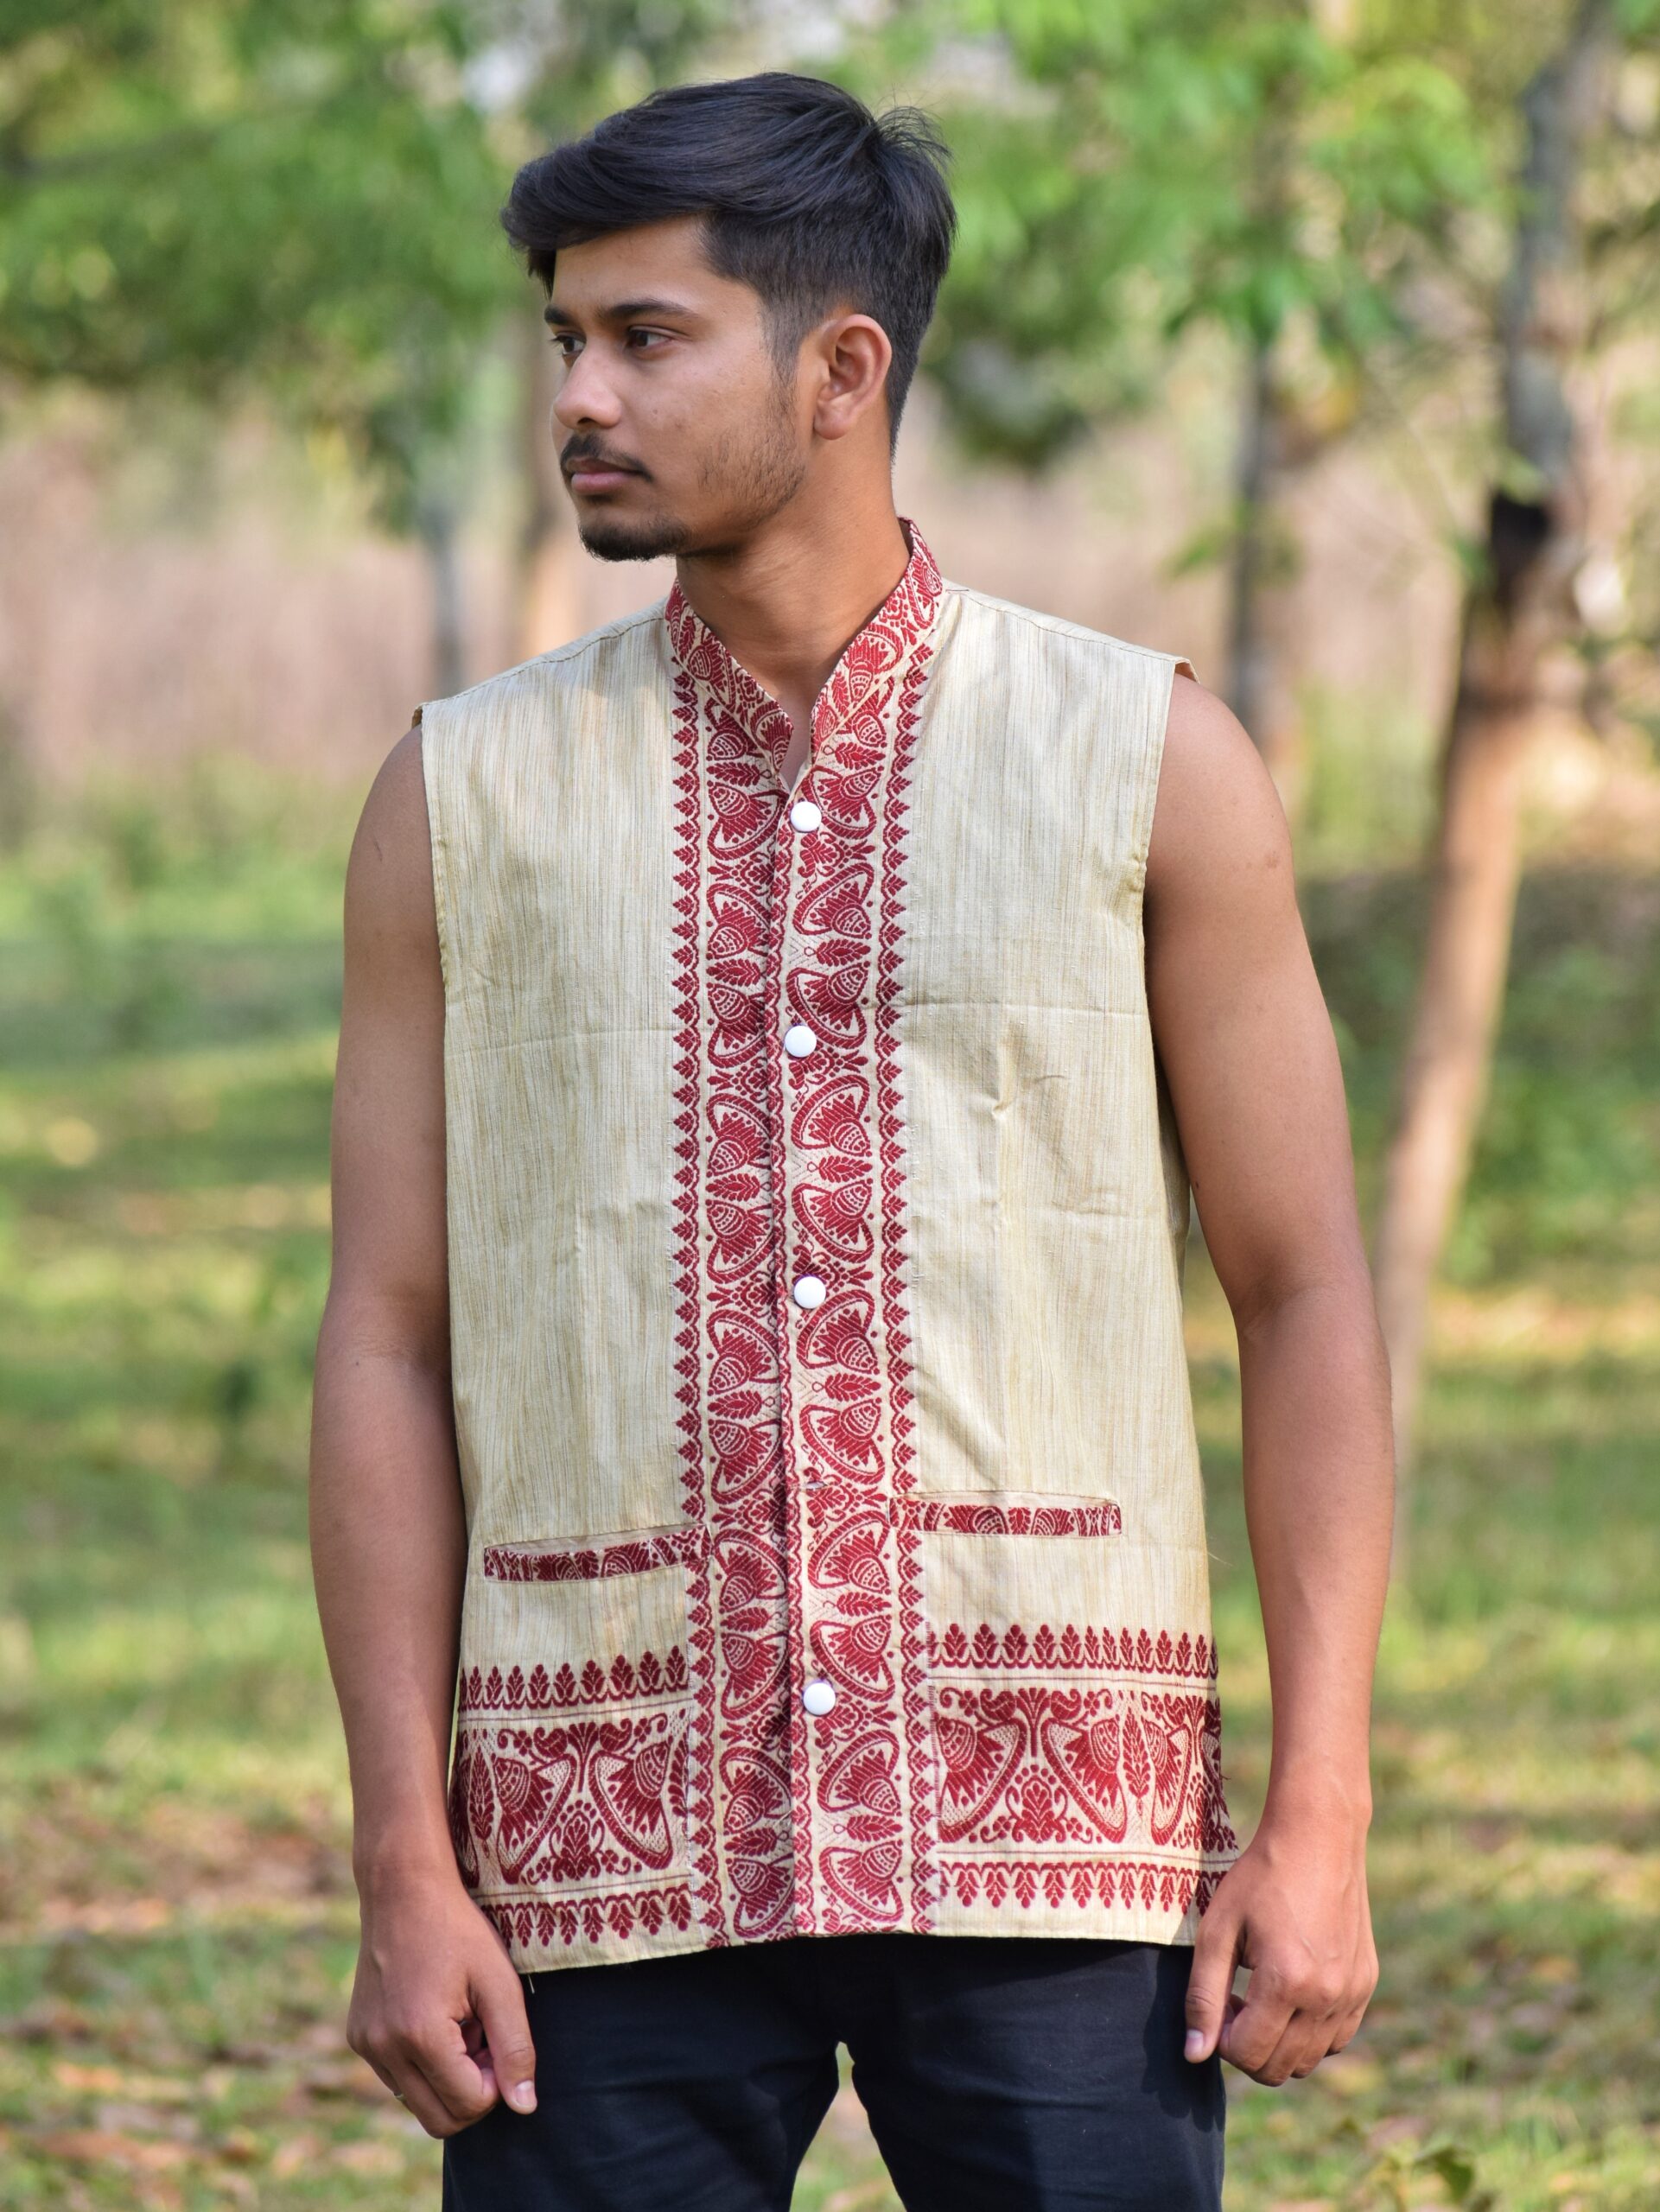 Traditional Dress of Assam | Assam Traditional Dress